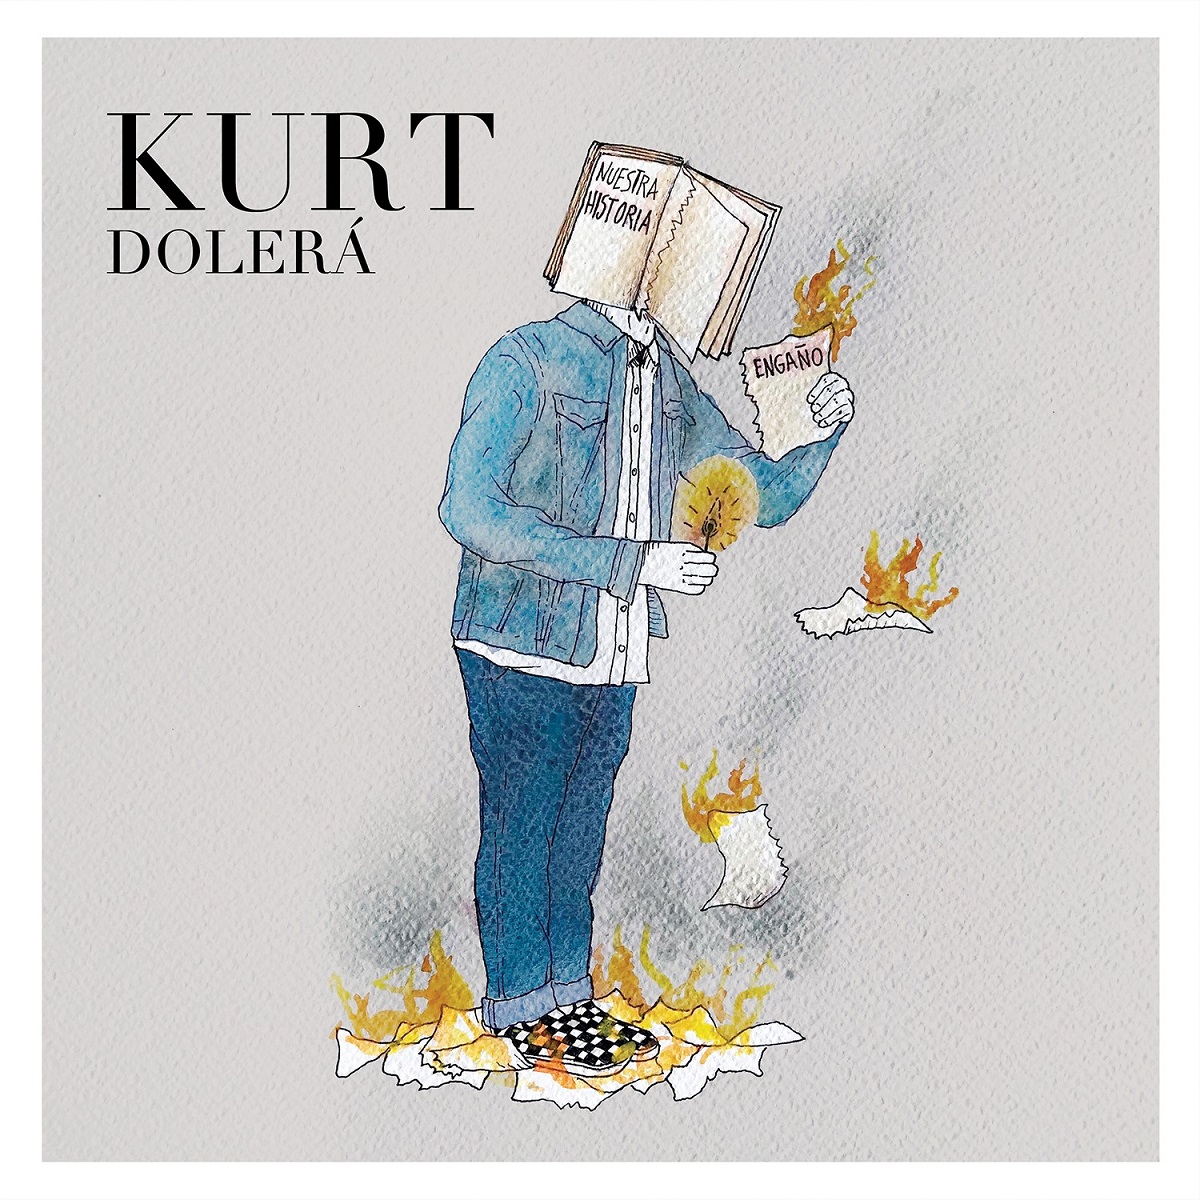 Kurt estrena su nuevo sencillo “Dolerá” 0